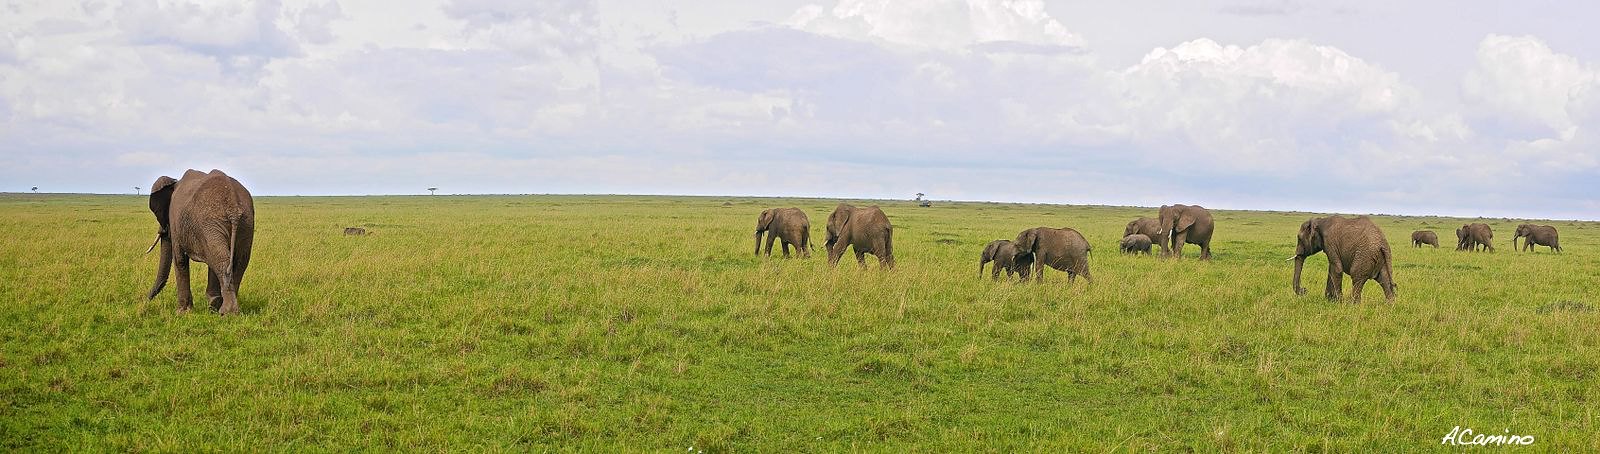 El parto de una gacela en un Masai Mara, lleno de búfalos, leones, guepardos... - 12 días de Safari en Kenia: Jambo bwana (53)